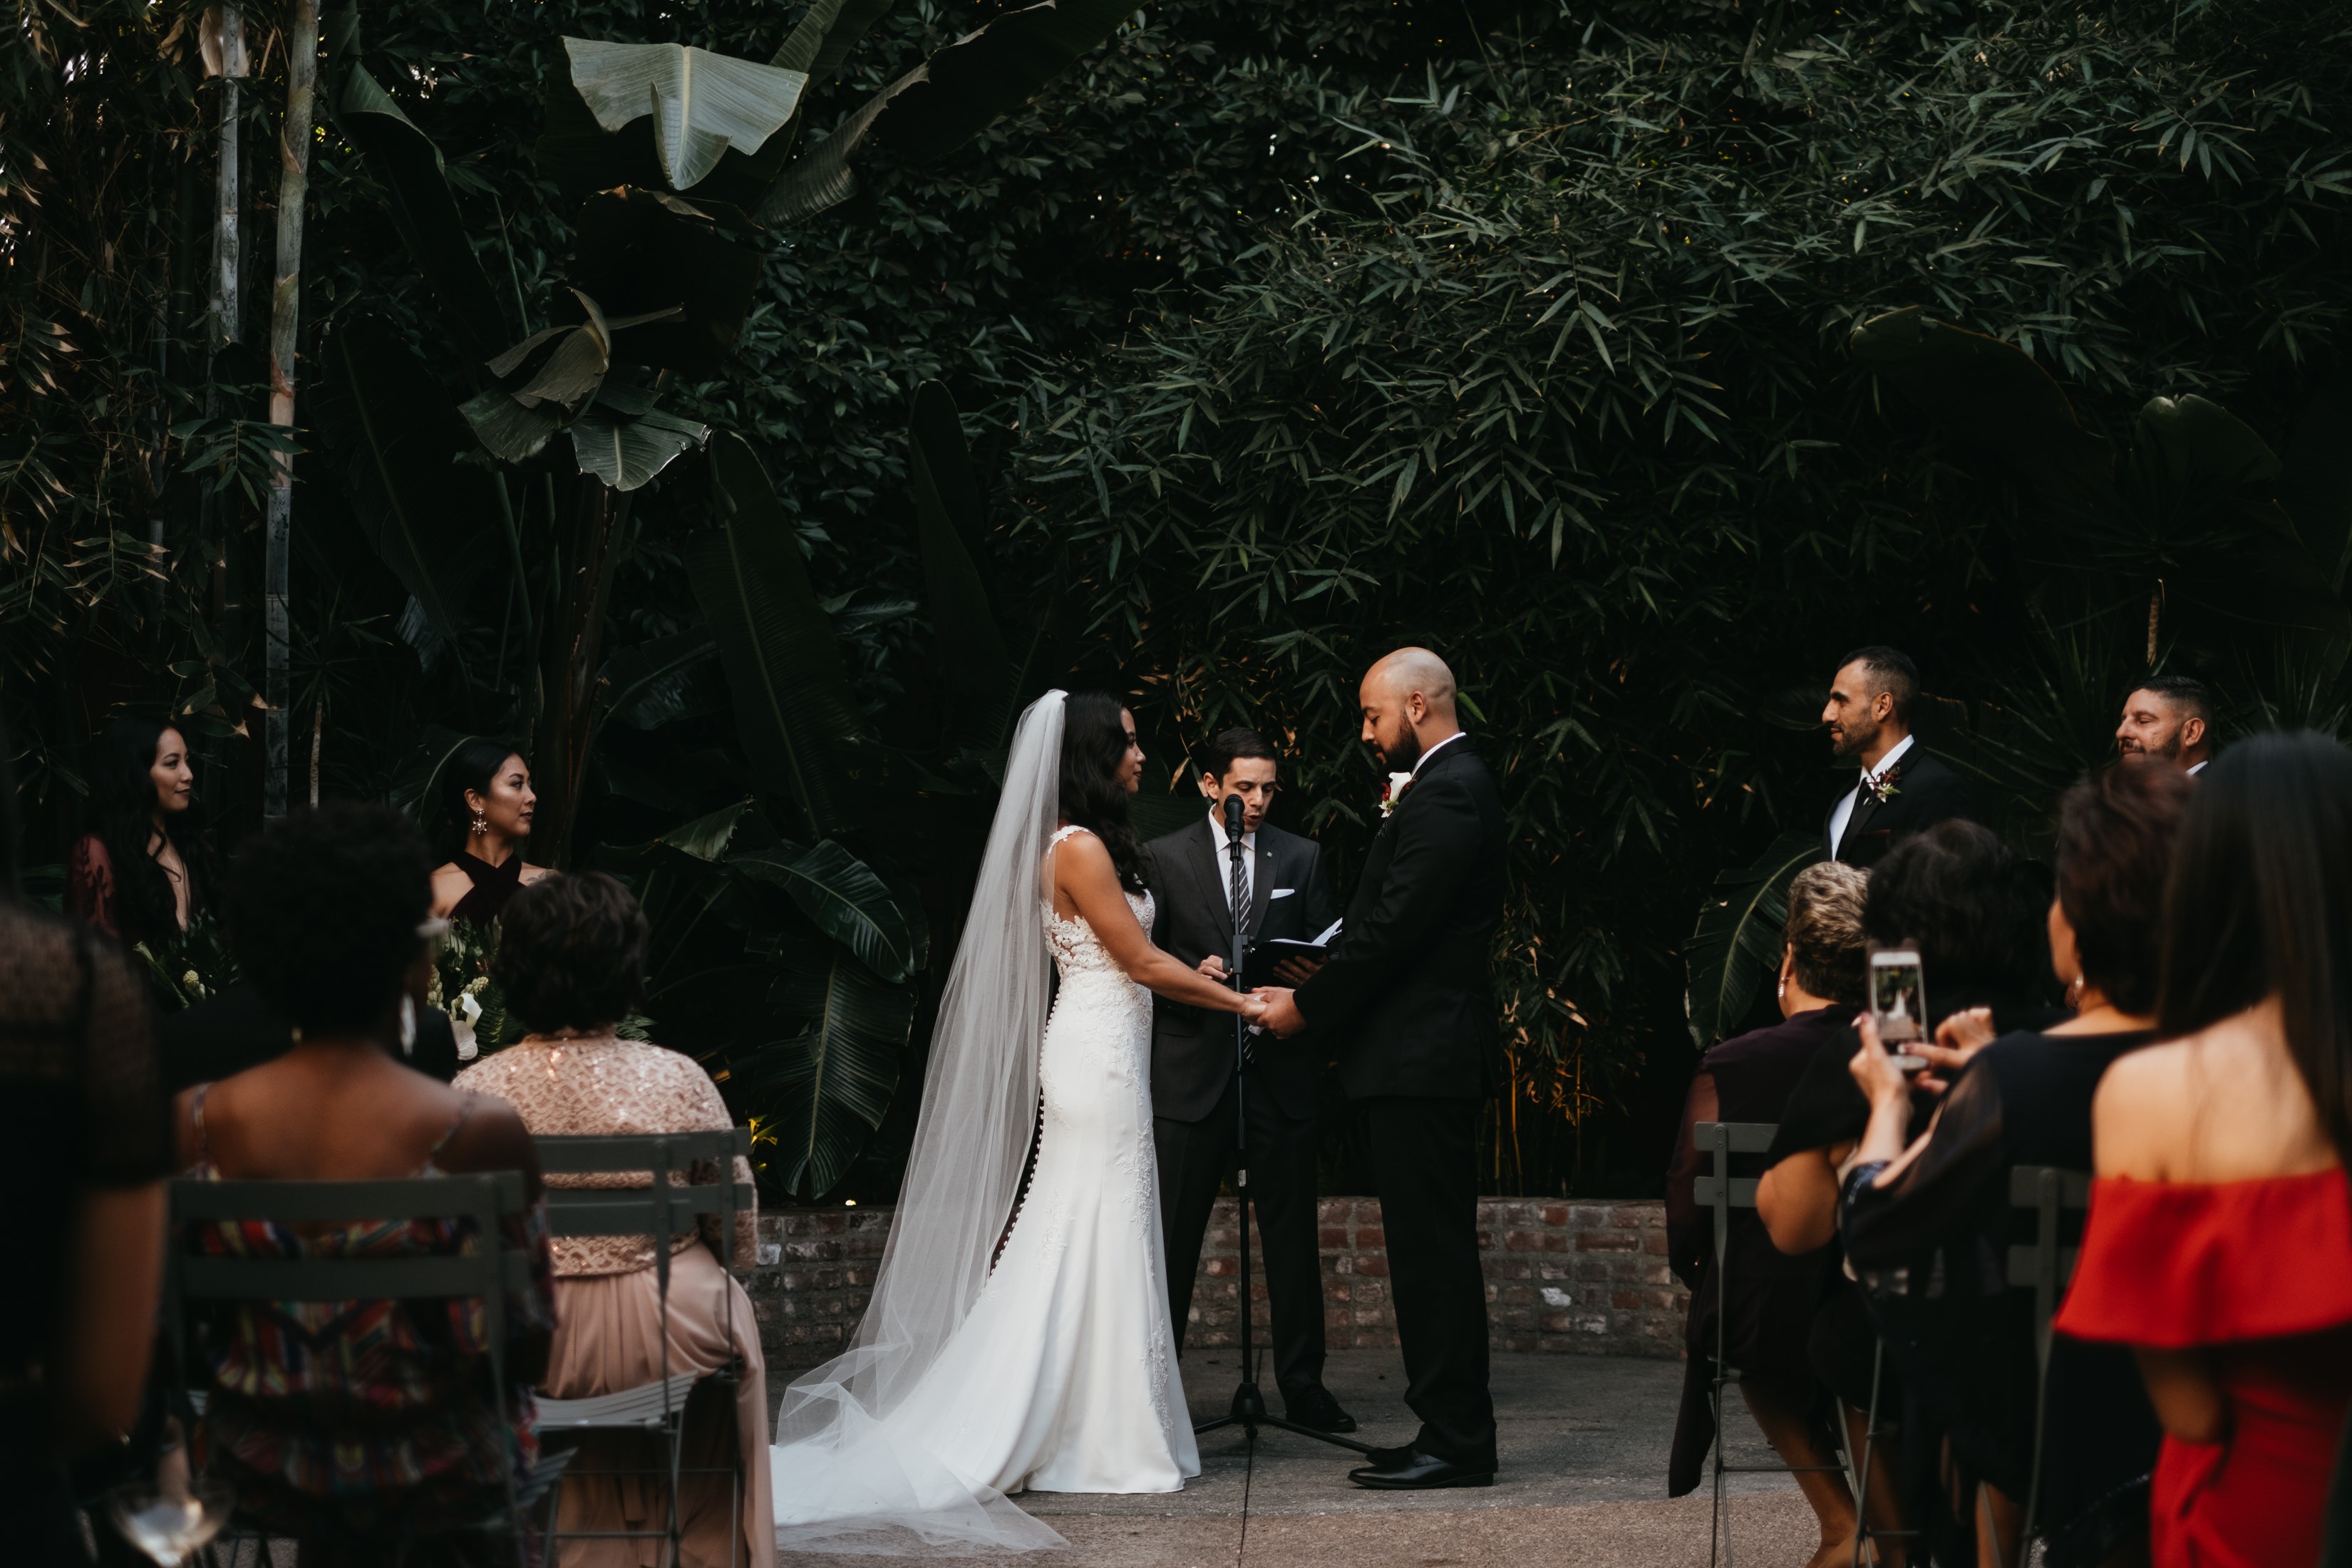 Ceremony - Wedding Ceremony in Los Angeles